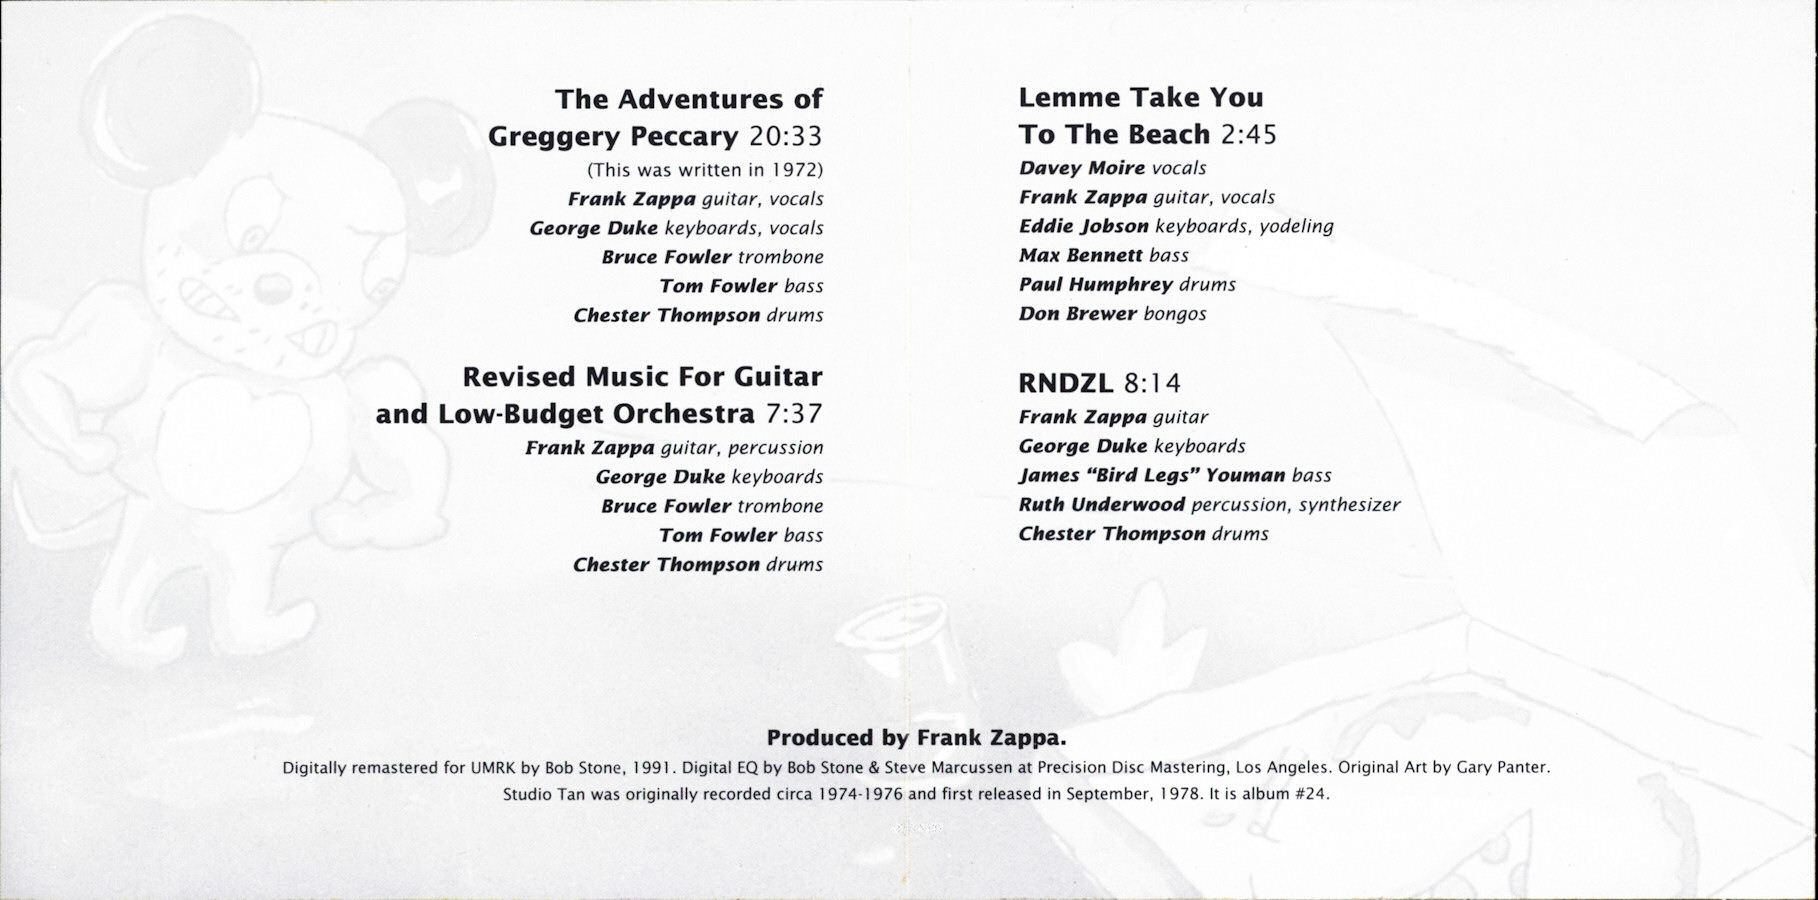 frank zappa: official release #24 studio tan @ wolf's kompaktkiste